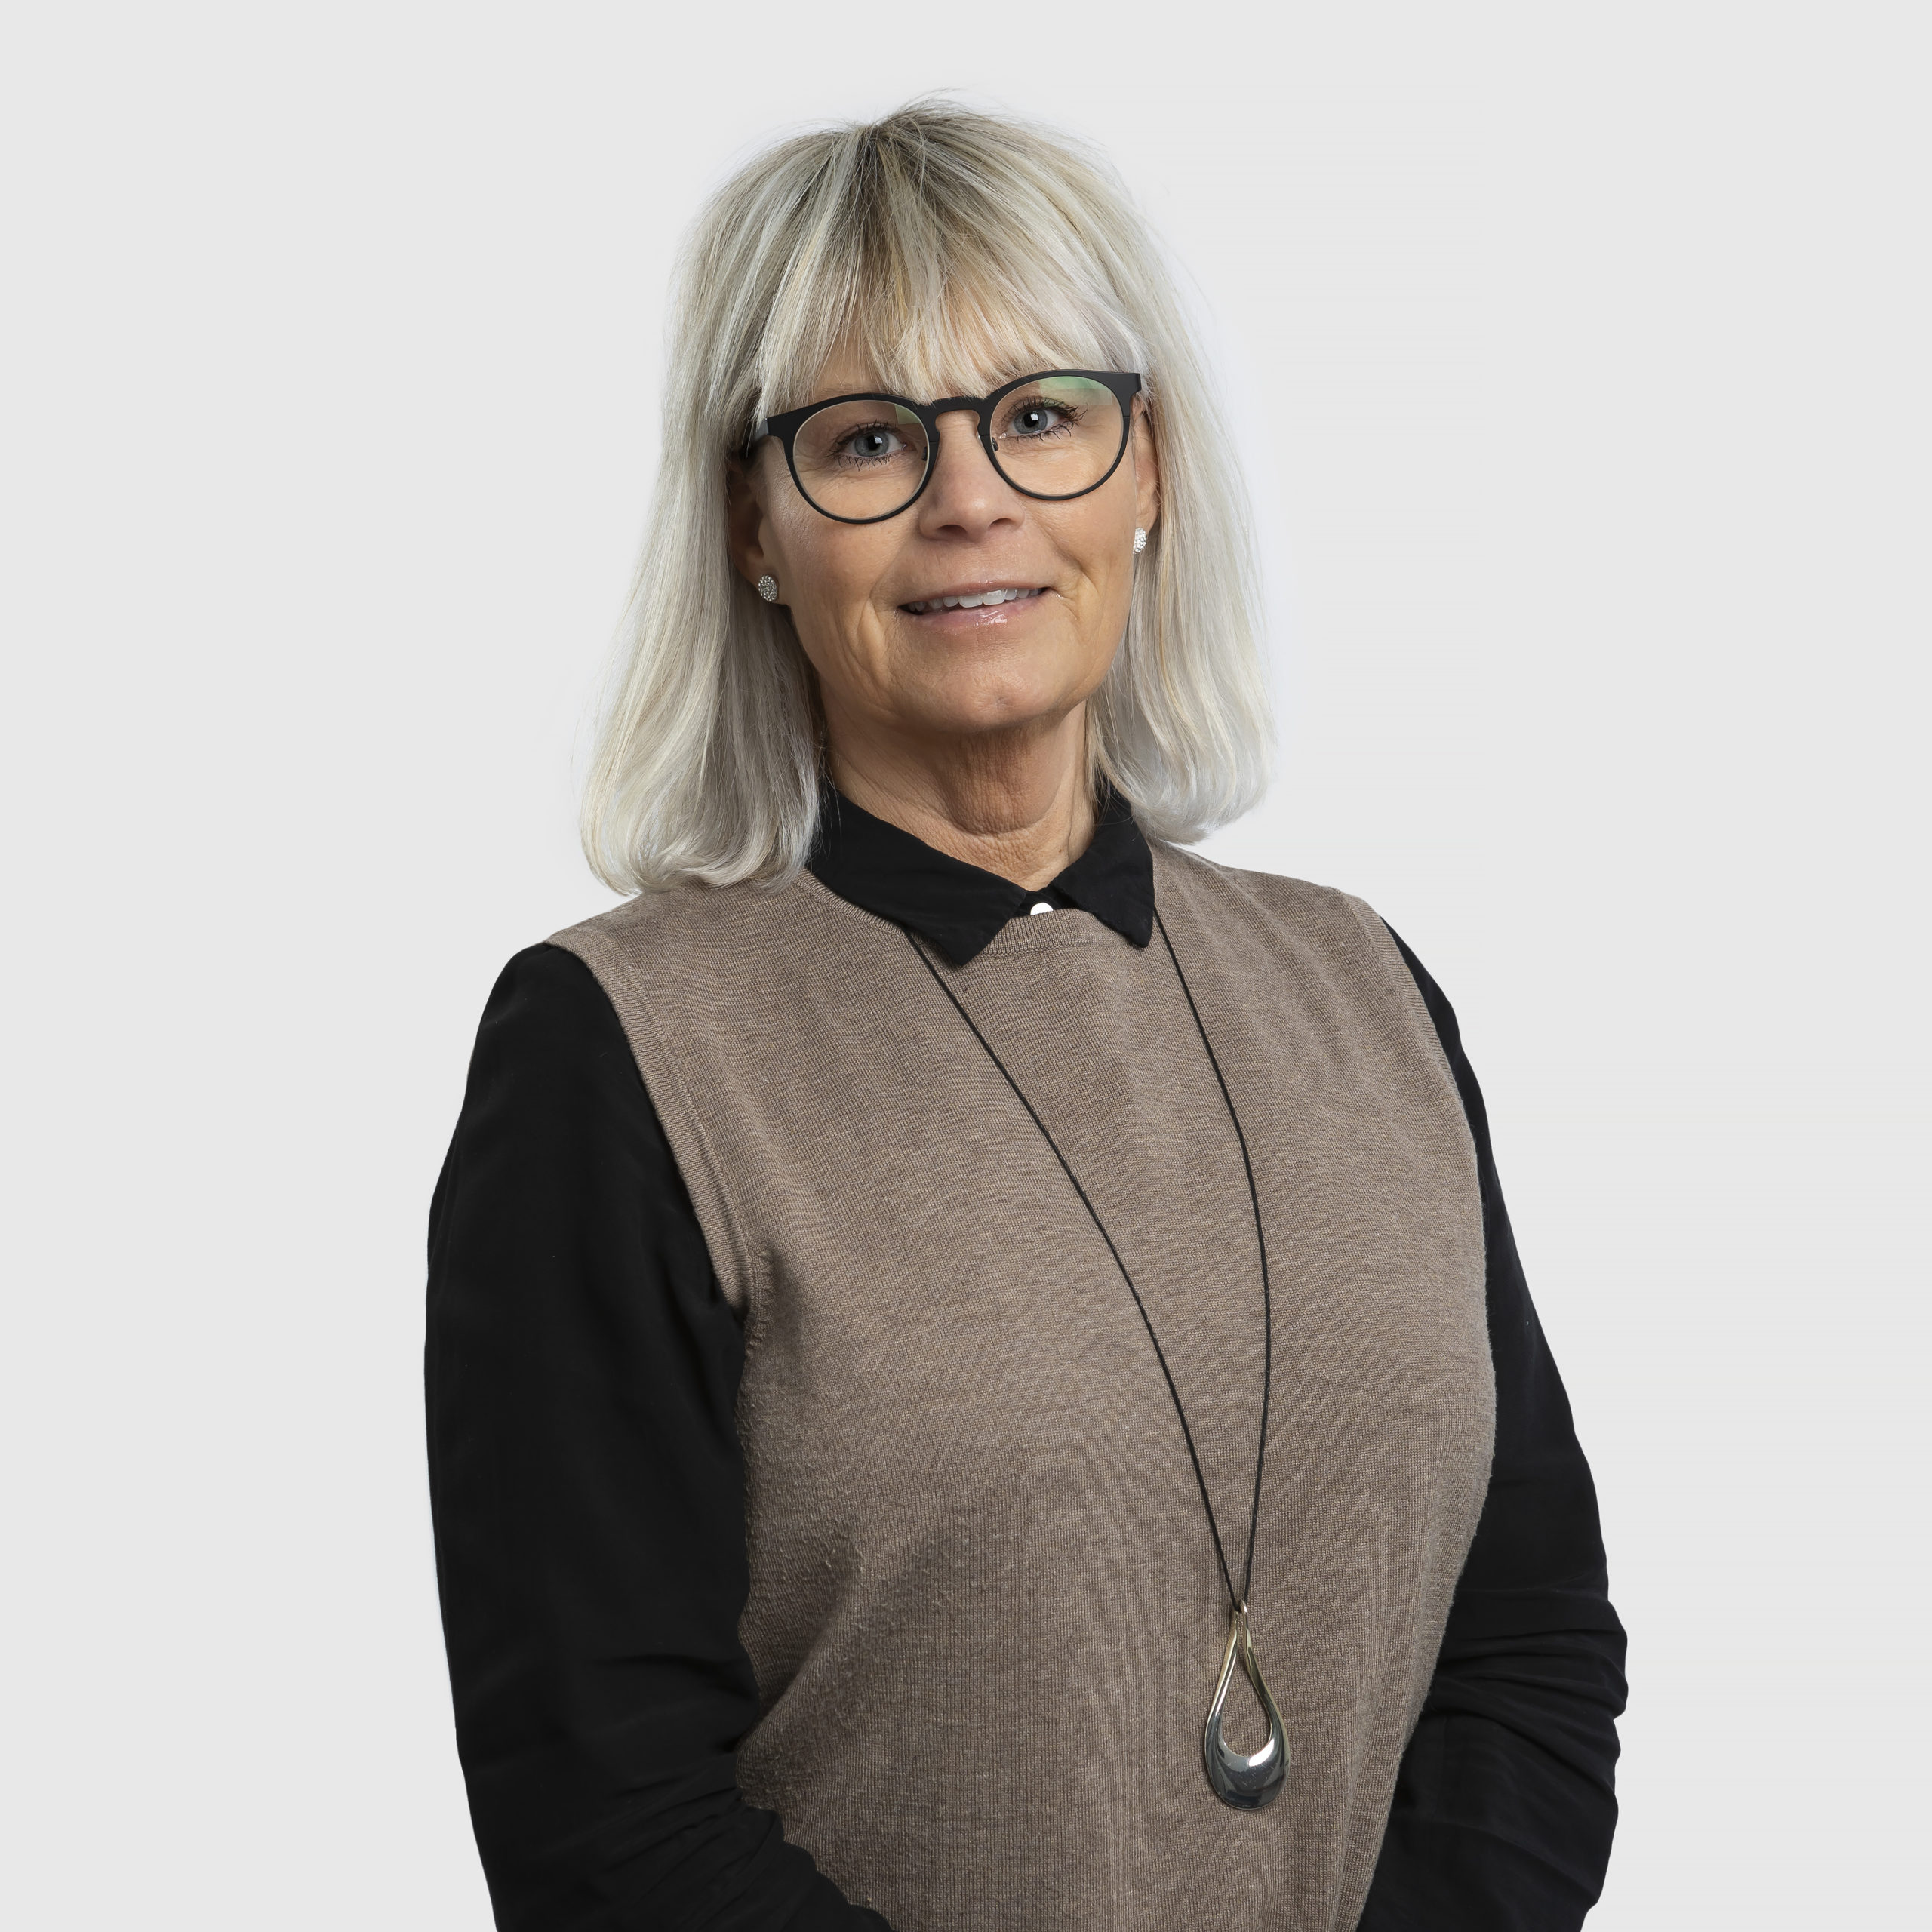 Helen Karlsson